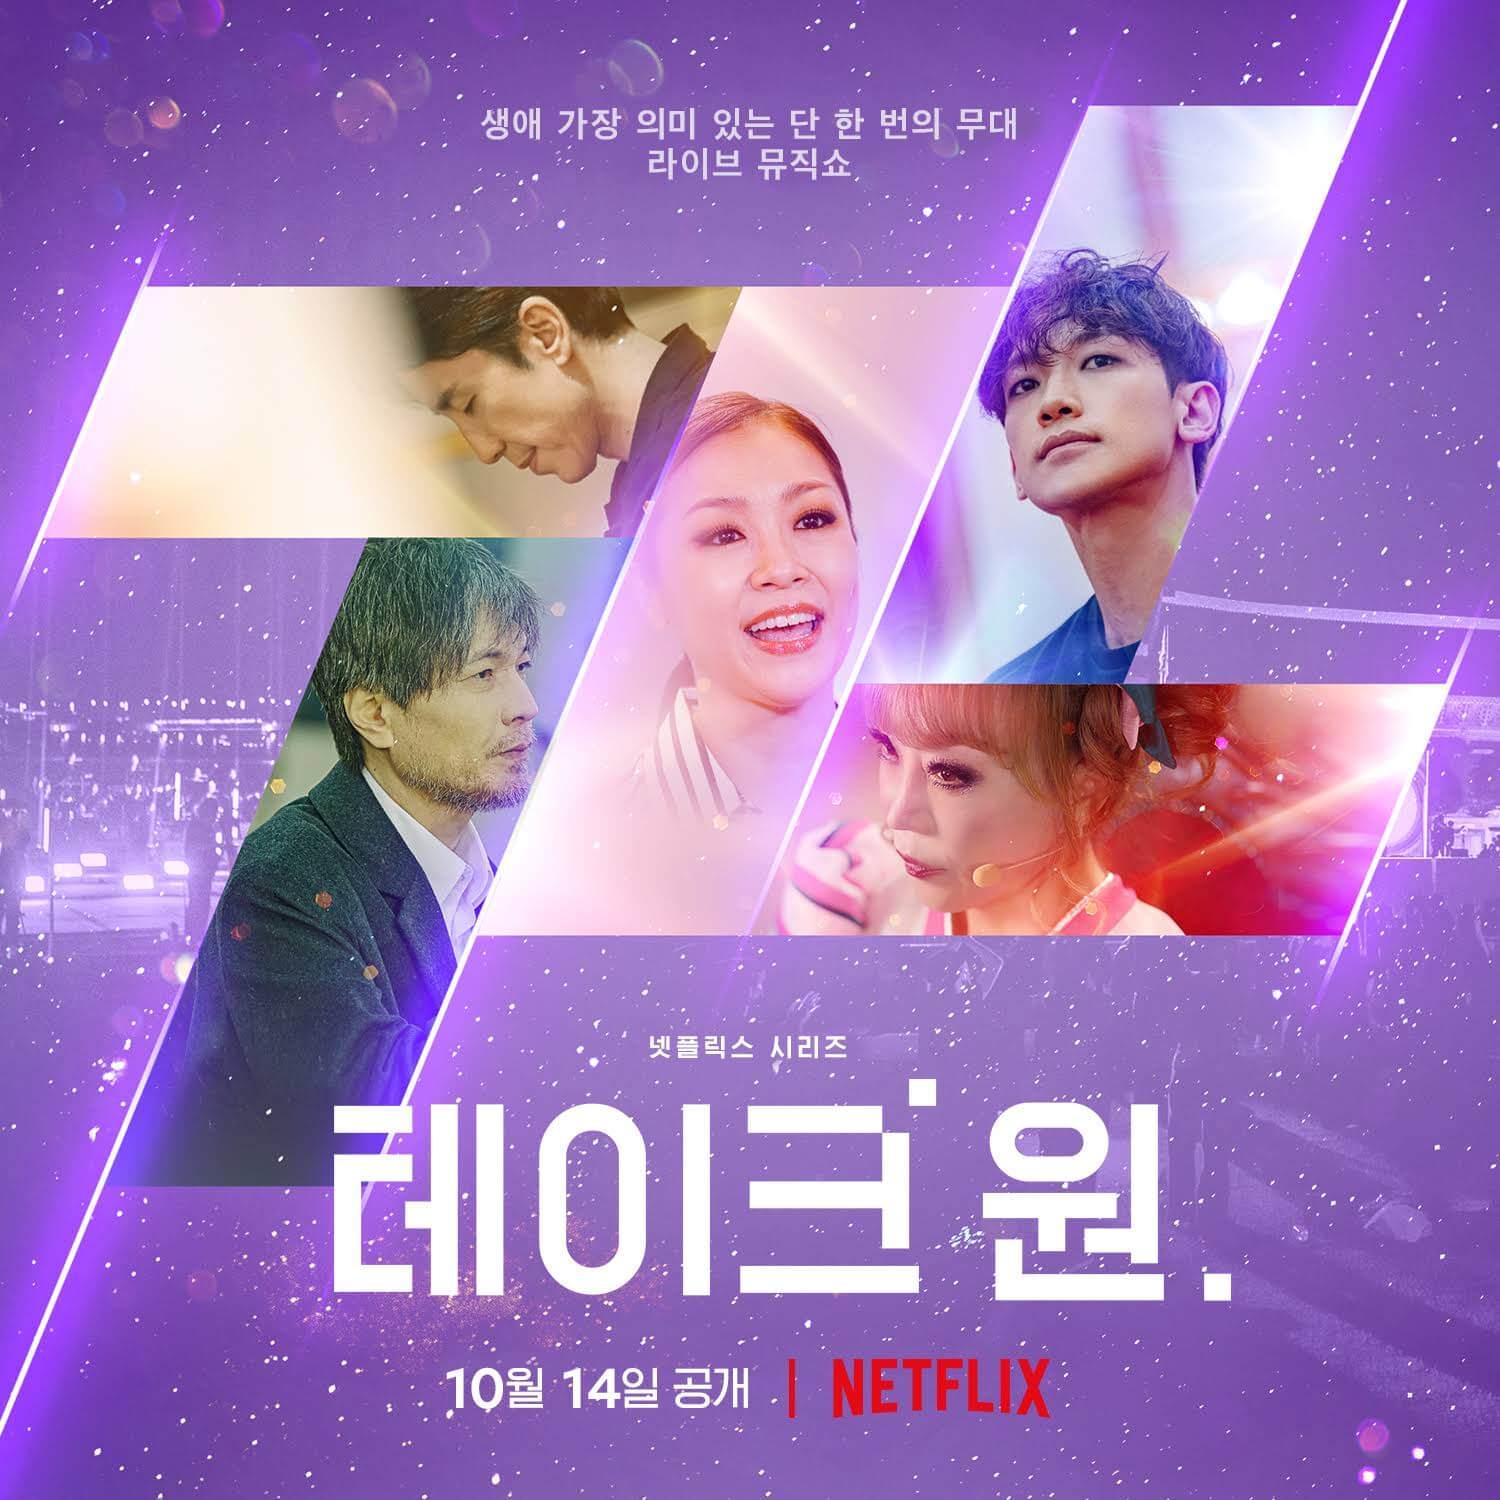 Lo spettacolo di varietà musicale coreano prende 1 in arrivo su Netflix nell'ottobre 2022 poster 1